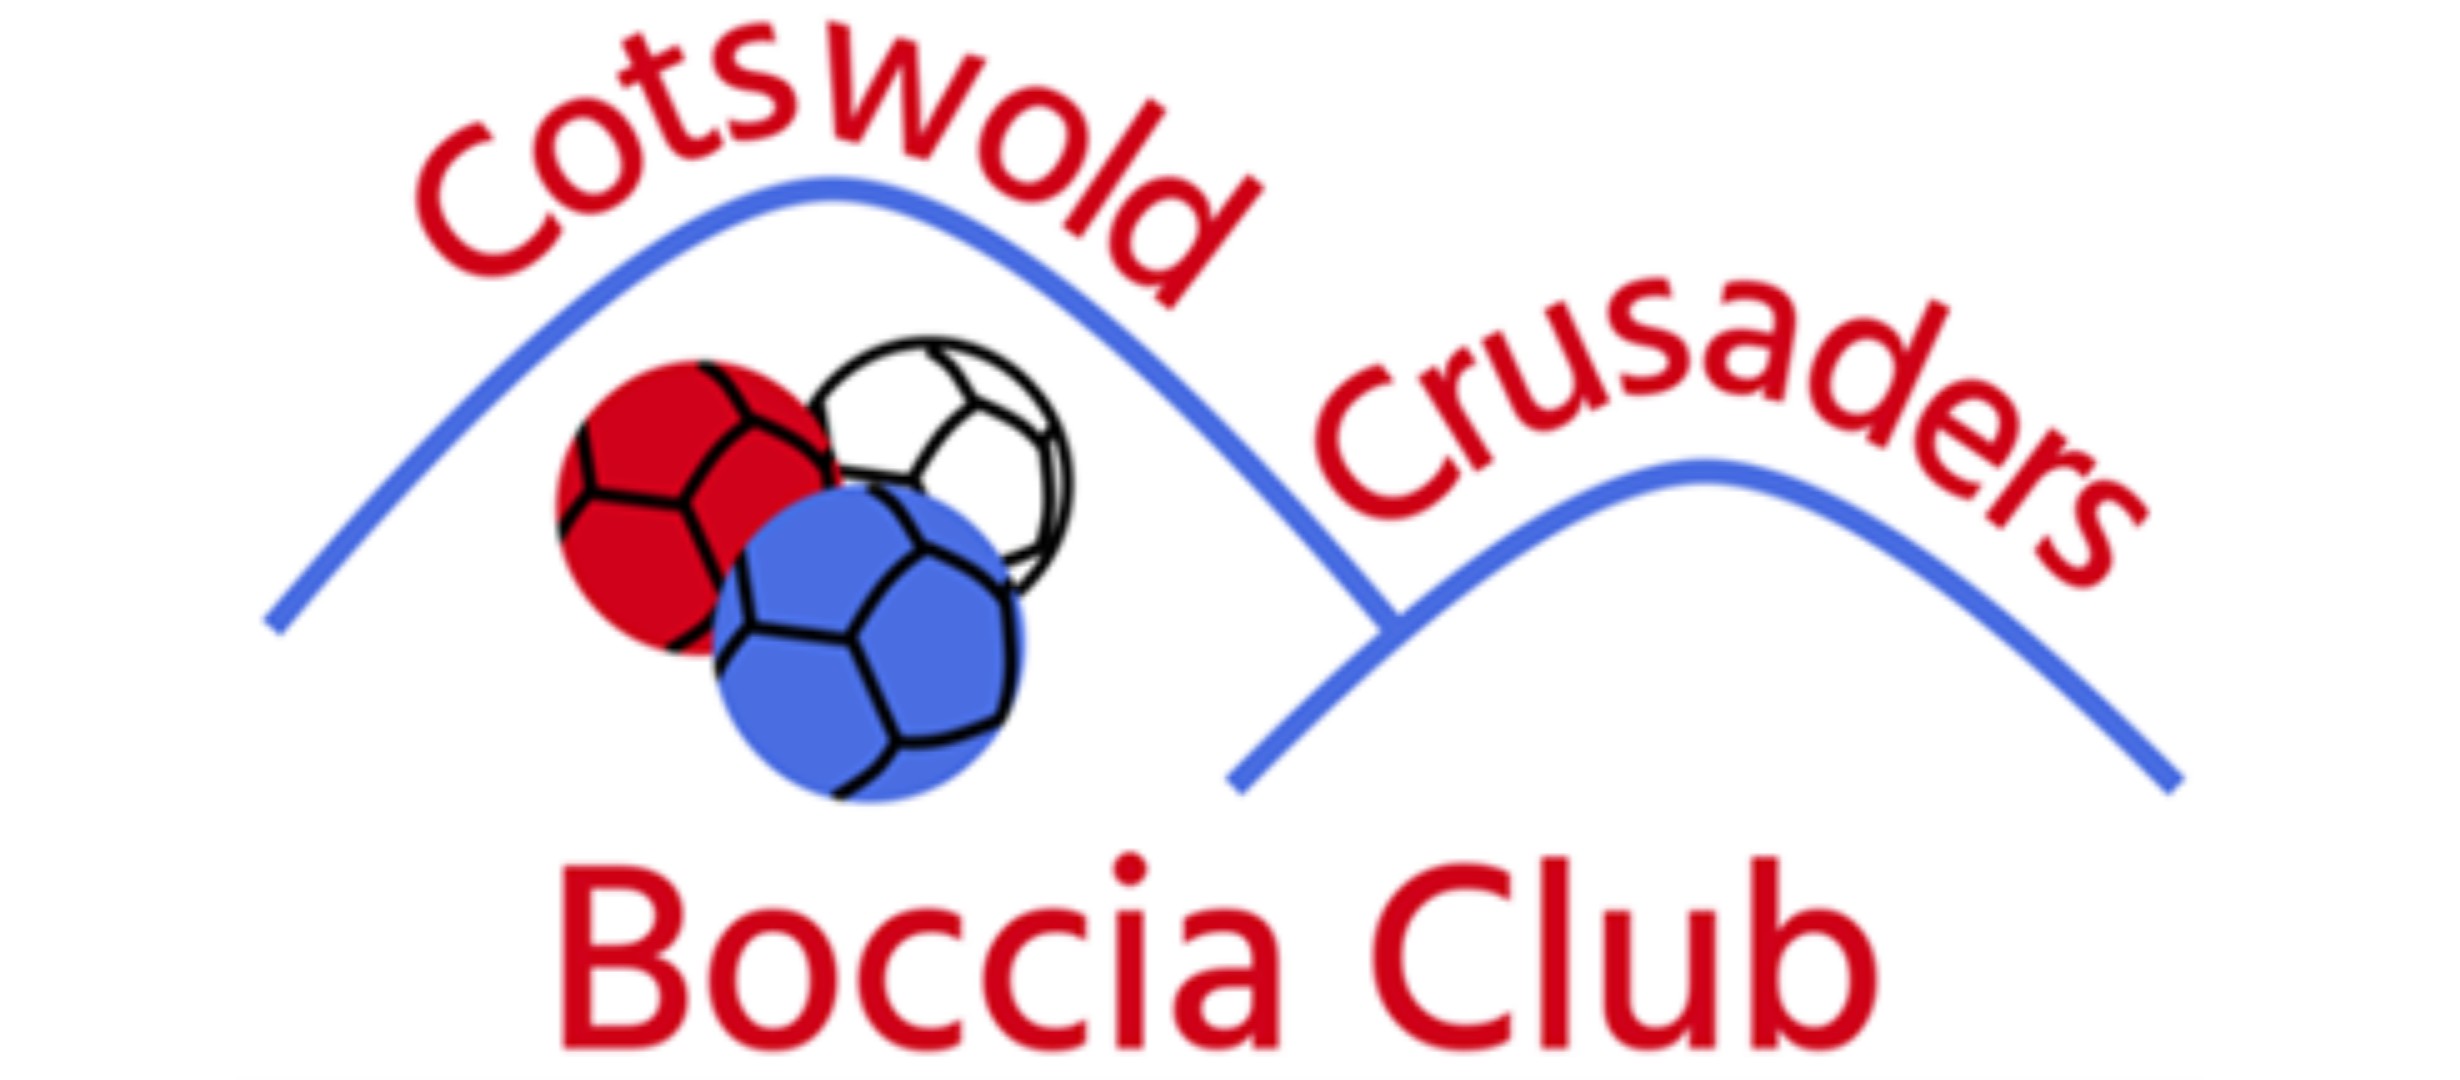 boccia club logo